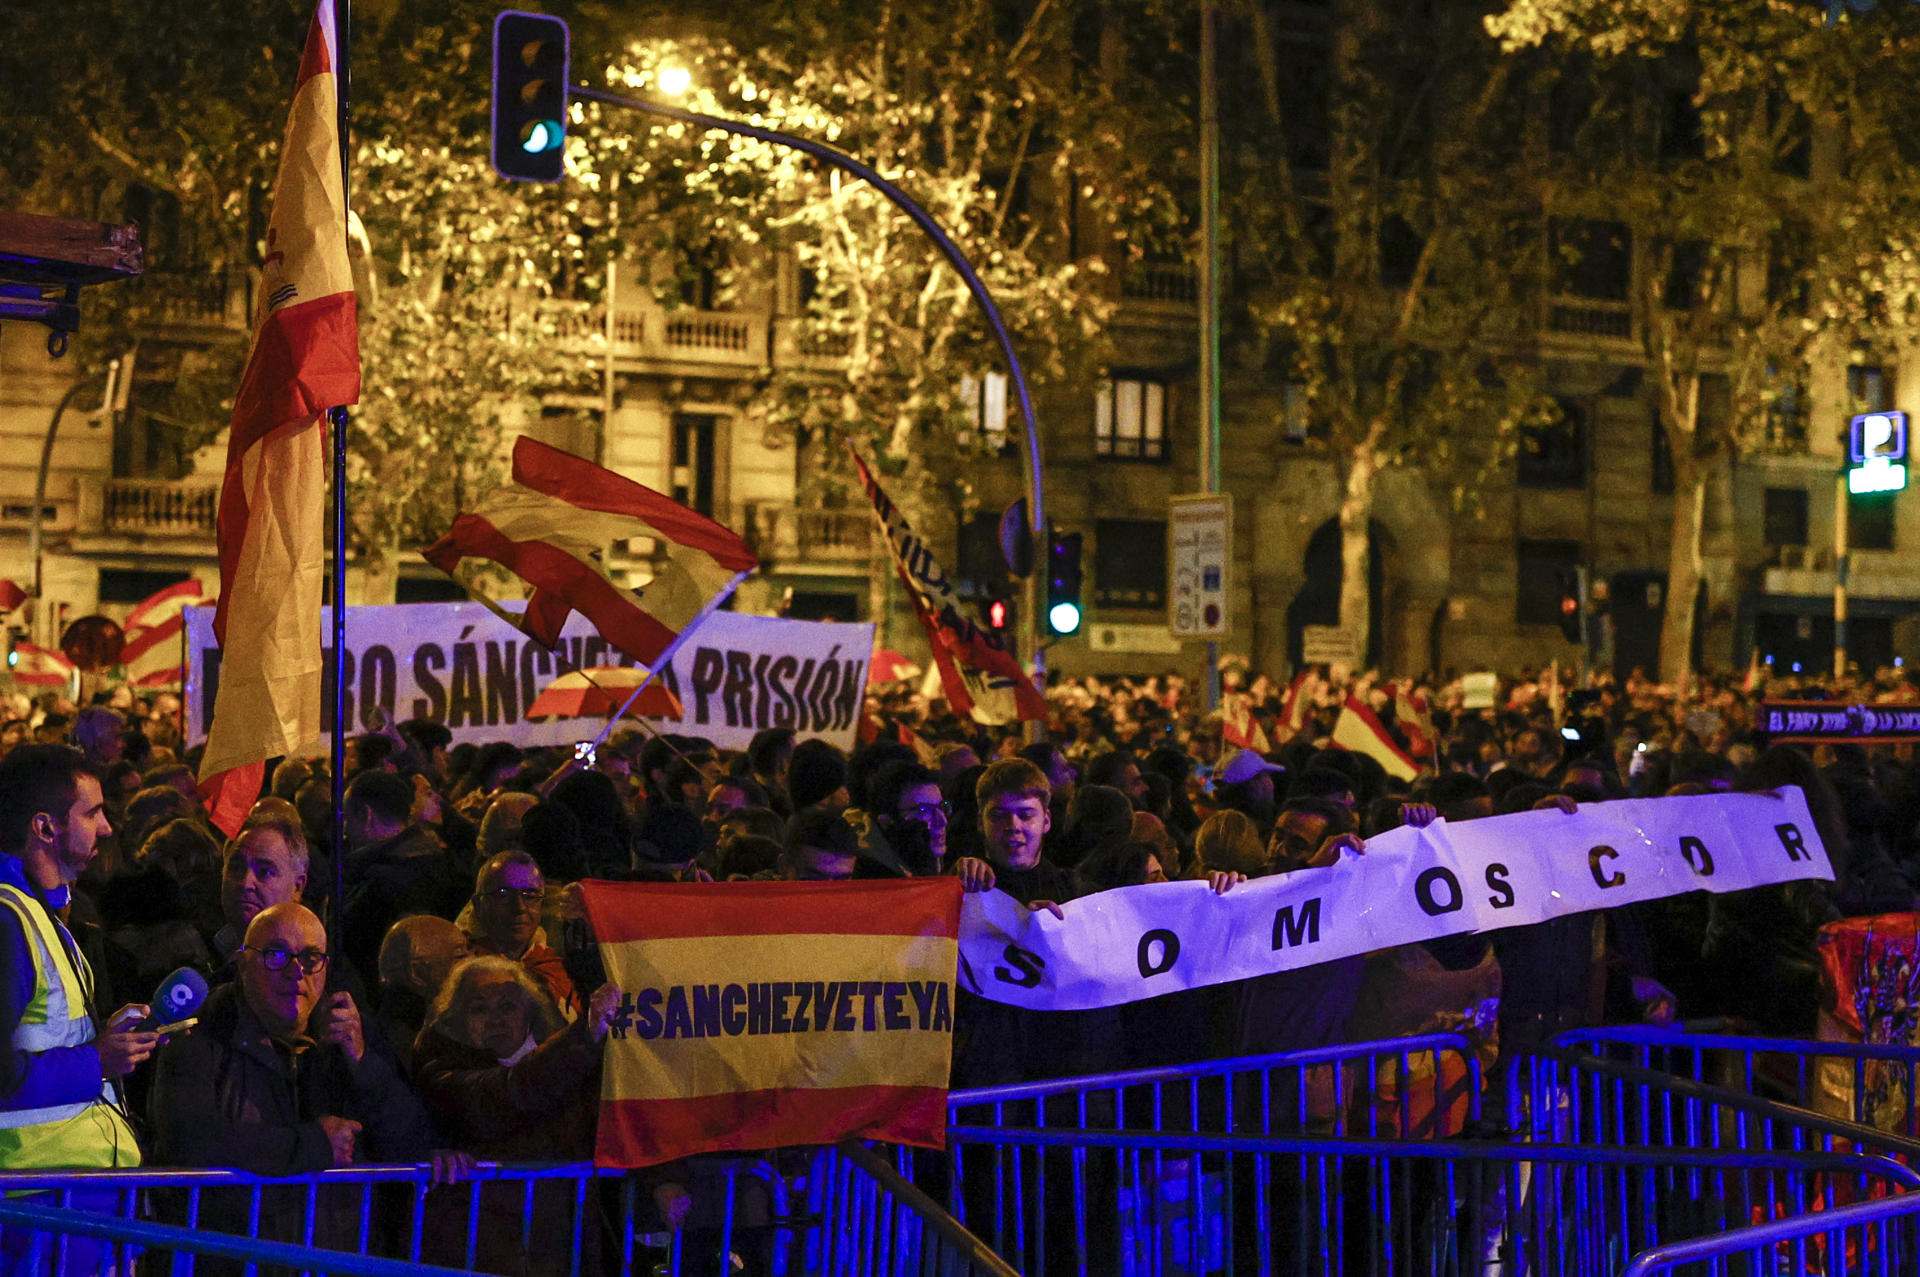 La manifestación contra la amnistía en Ferraz, sin incidentes, pero con insultos a Sánchez y Puigdemont